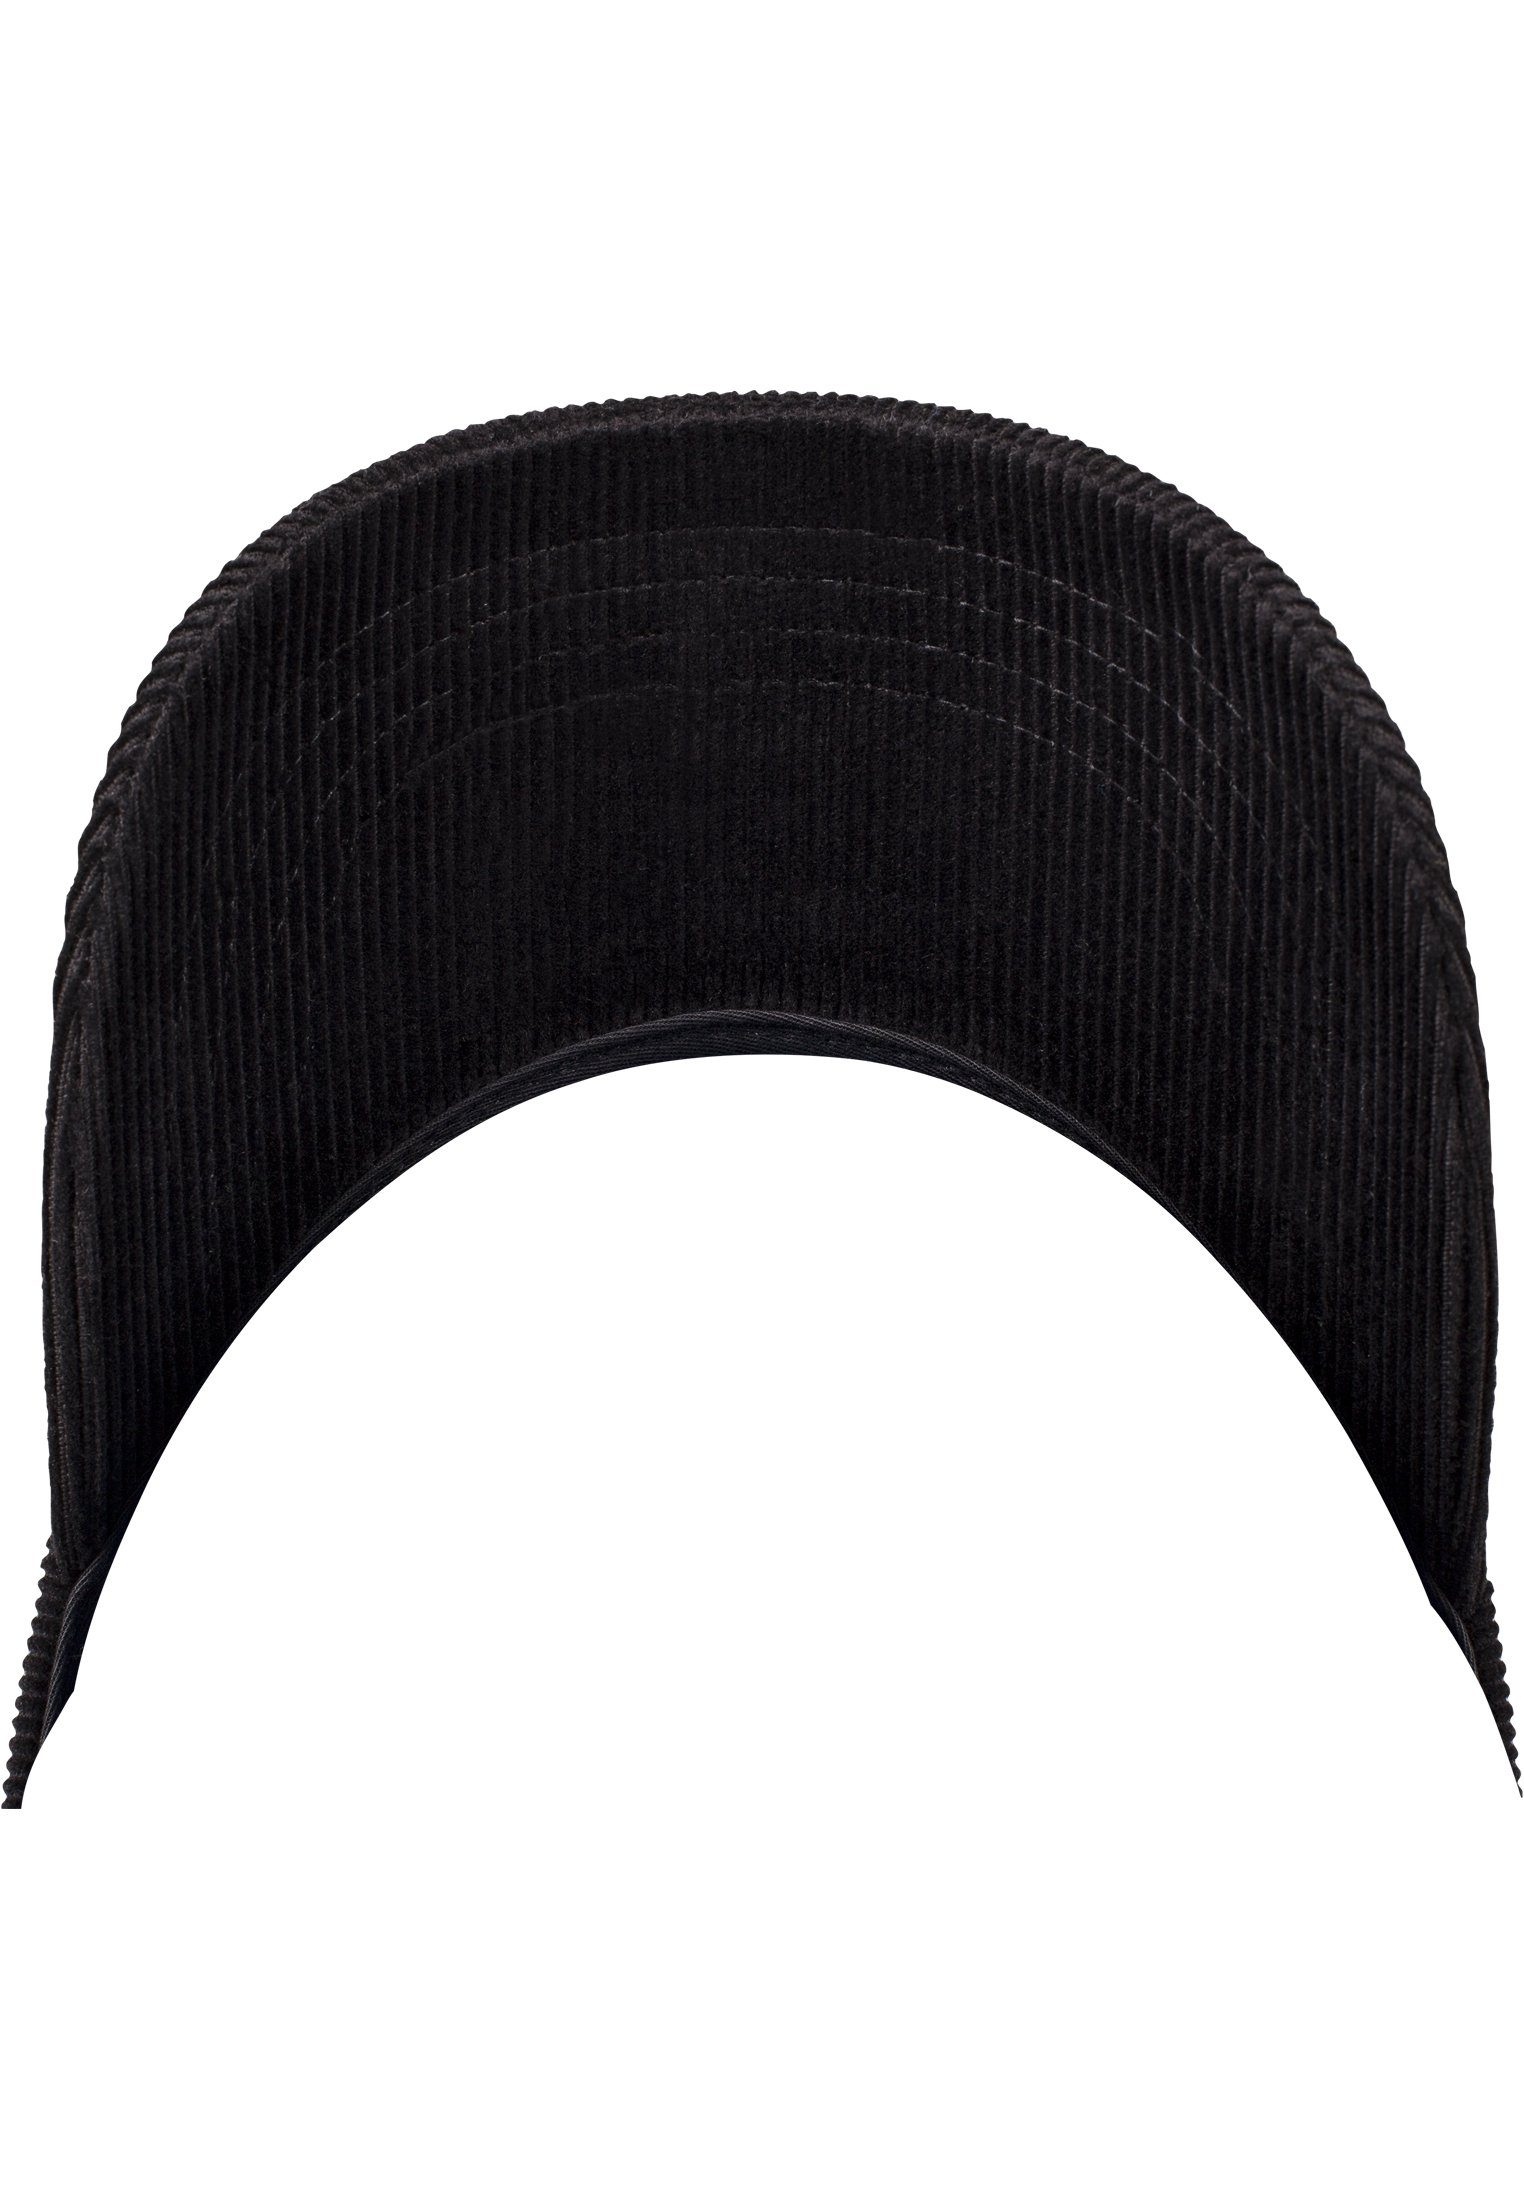 Cap Cap Corduroy black Profile Accessoires Low Flex Flexfit Dad